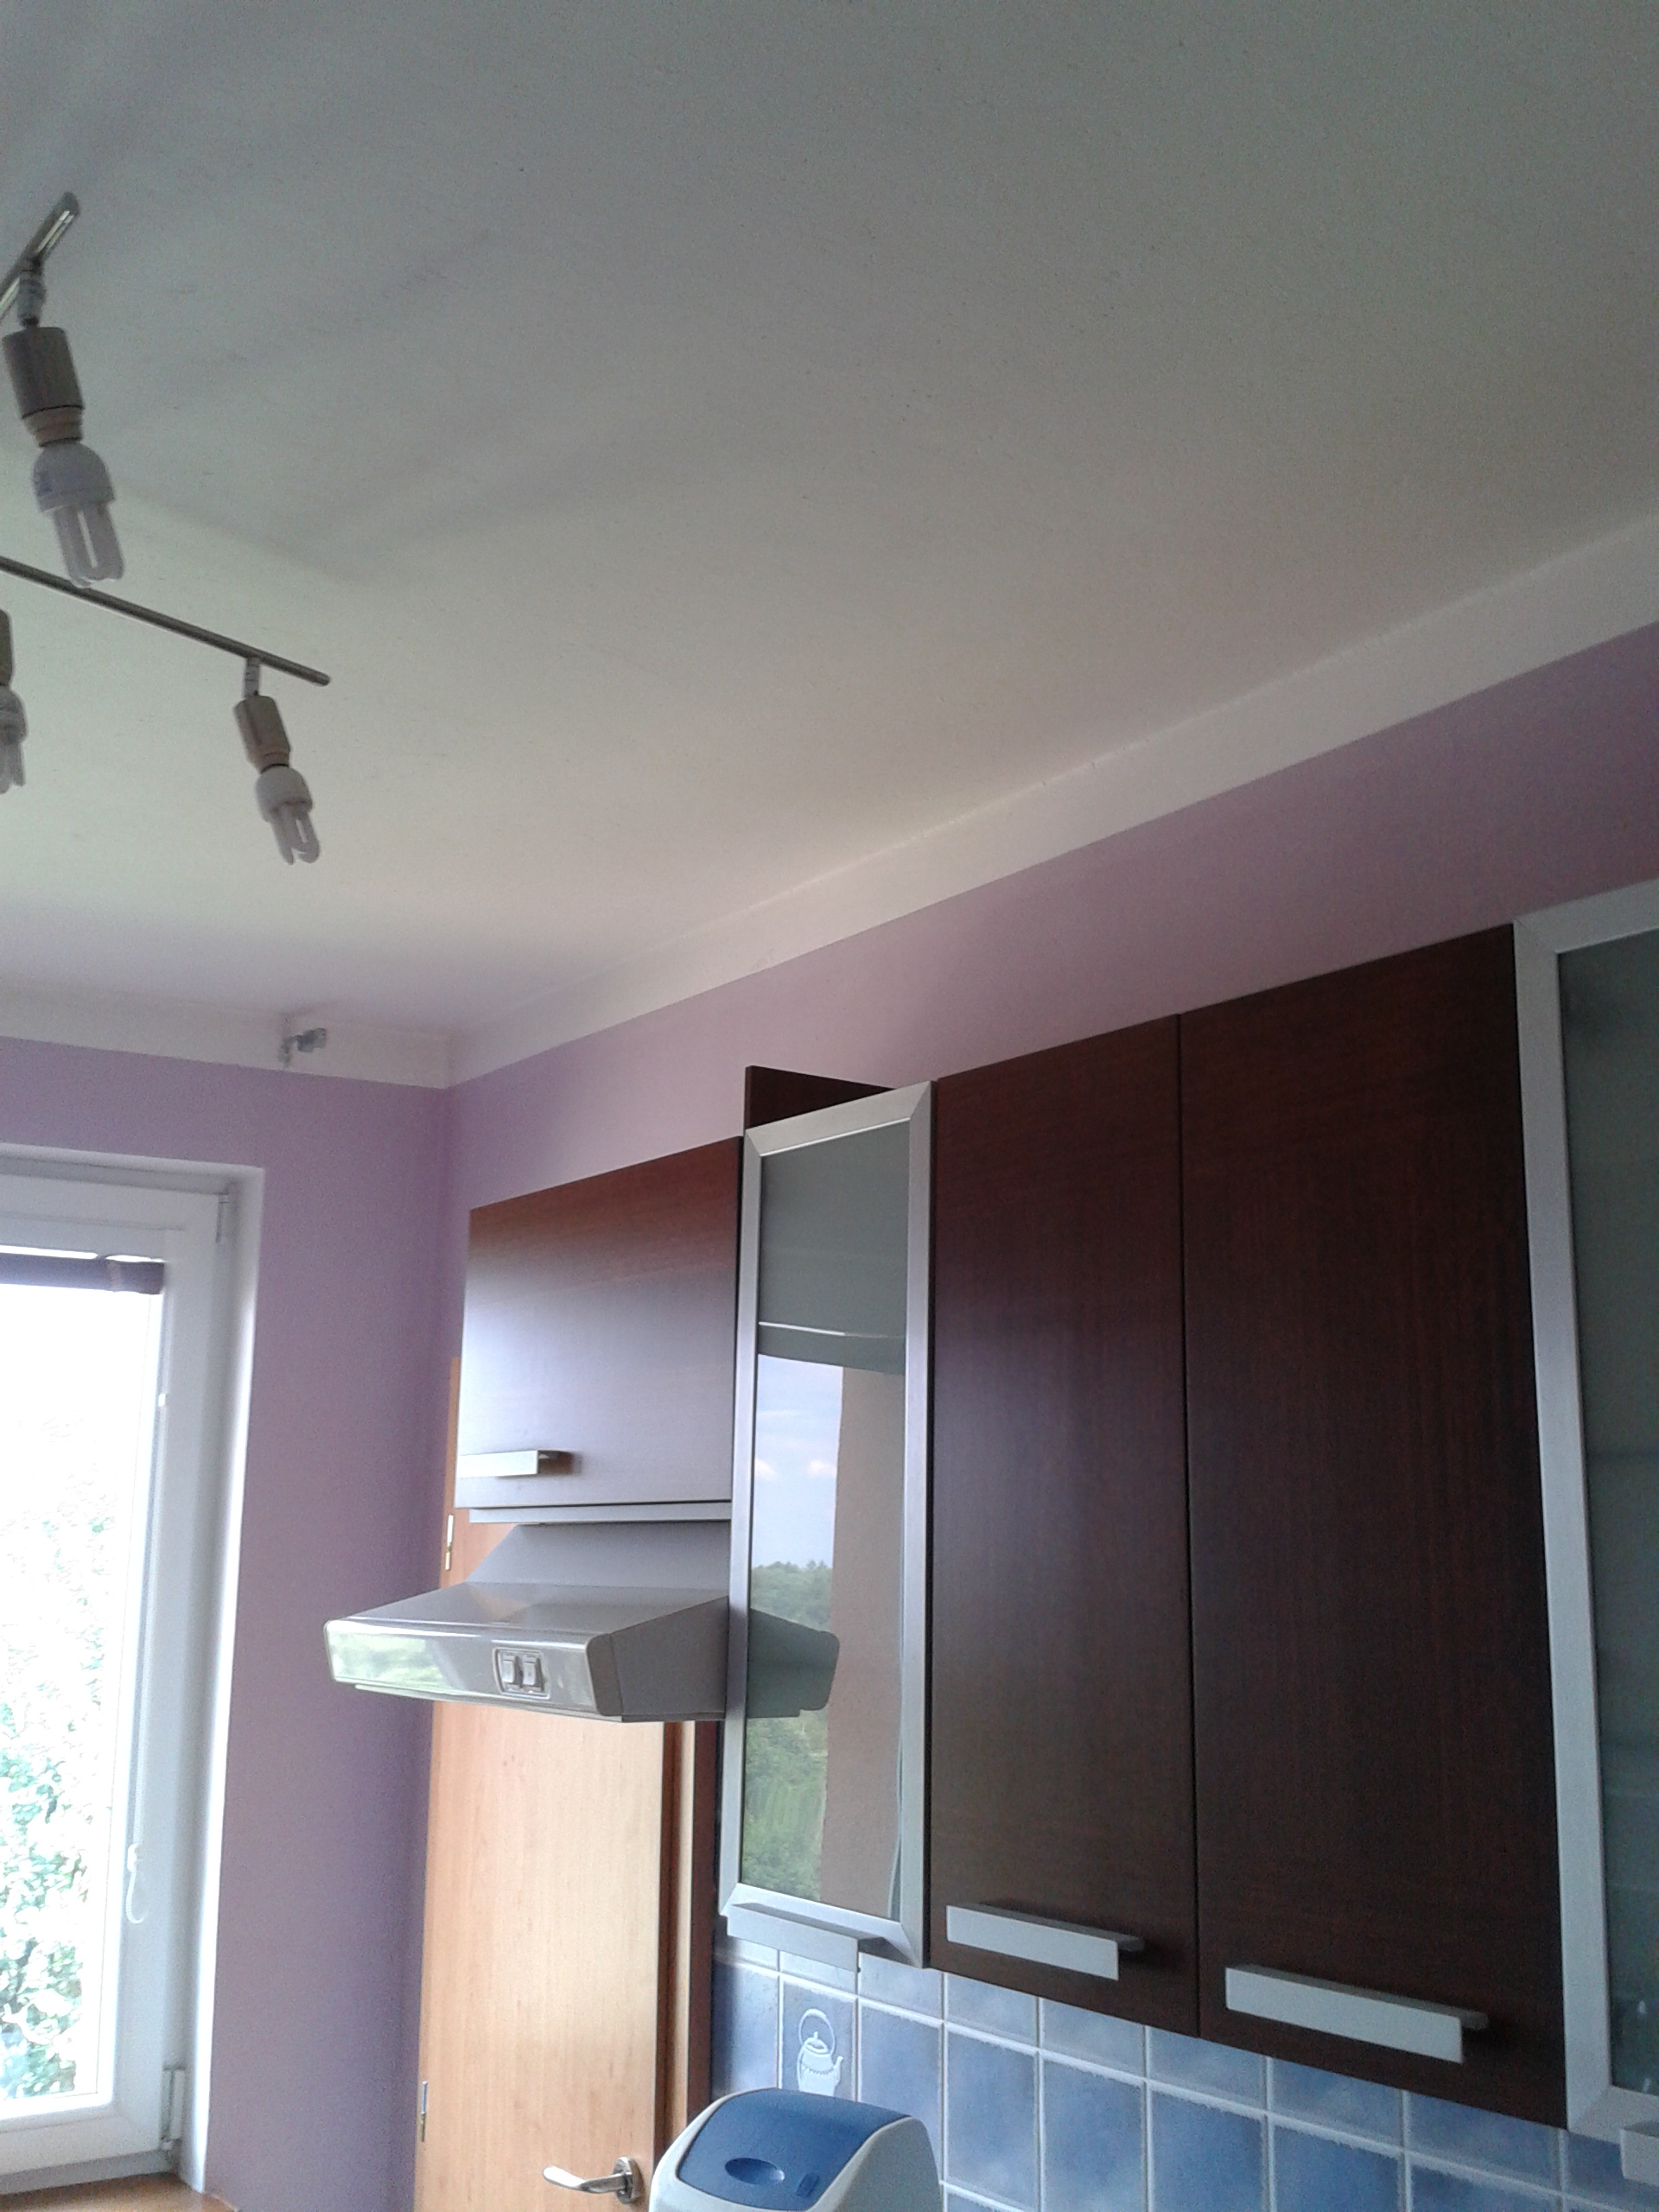 Moderní fialová barva pro výmalbu kuchyně